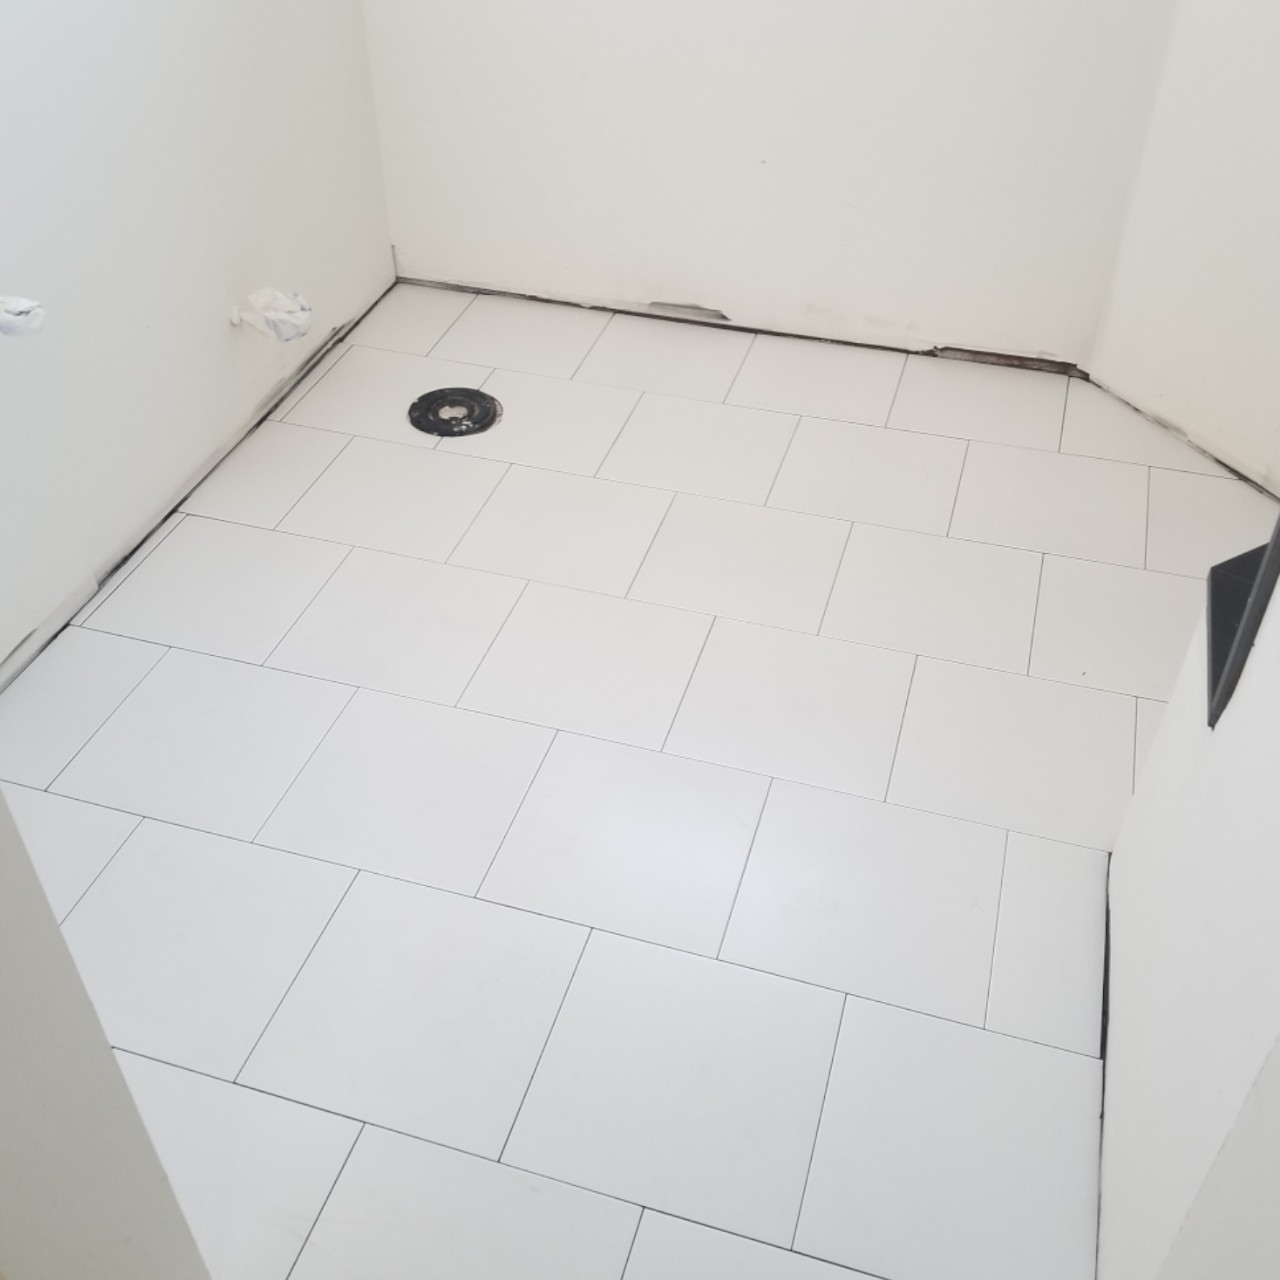 tiling-custom-bathtub-shower-tiles--after-06